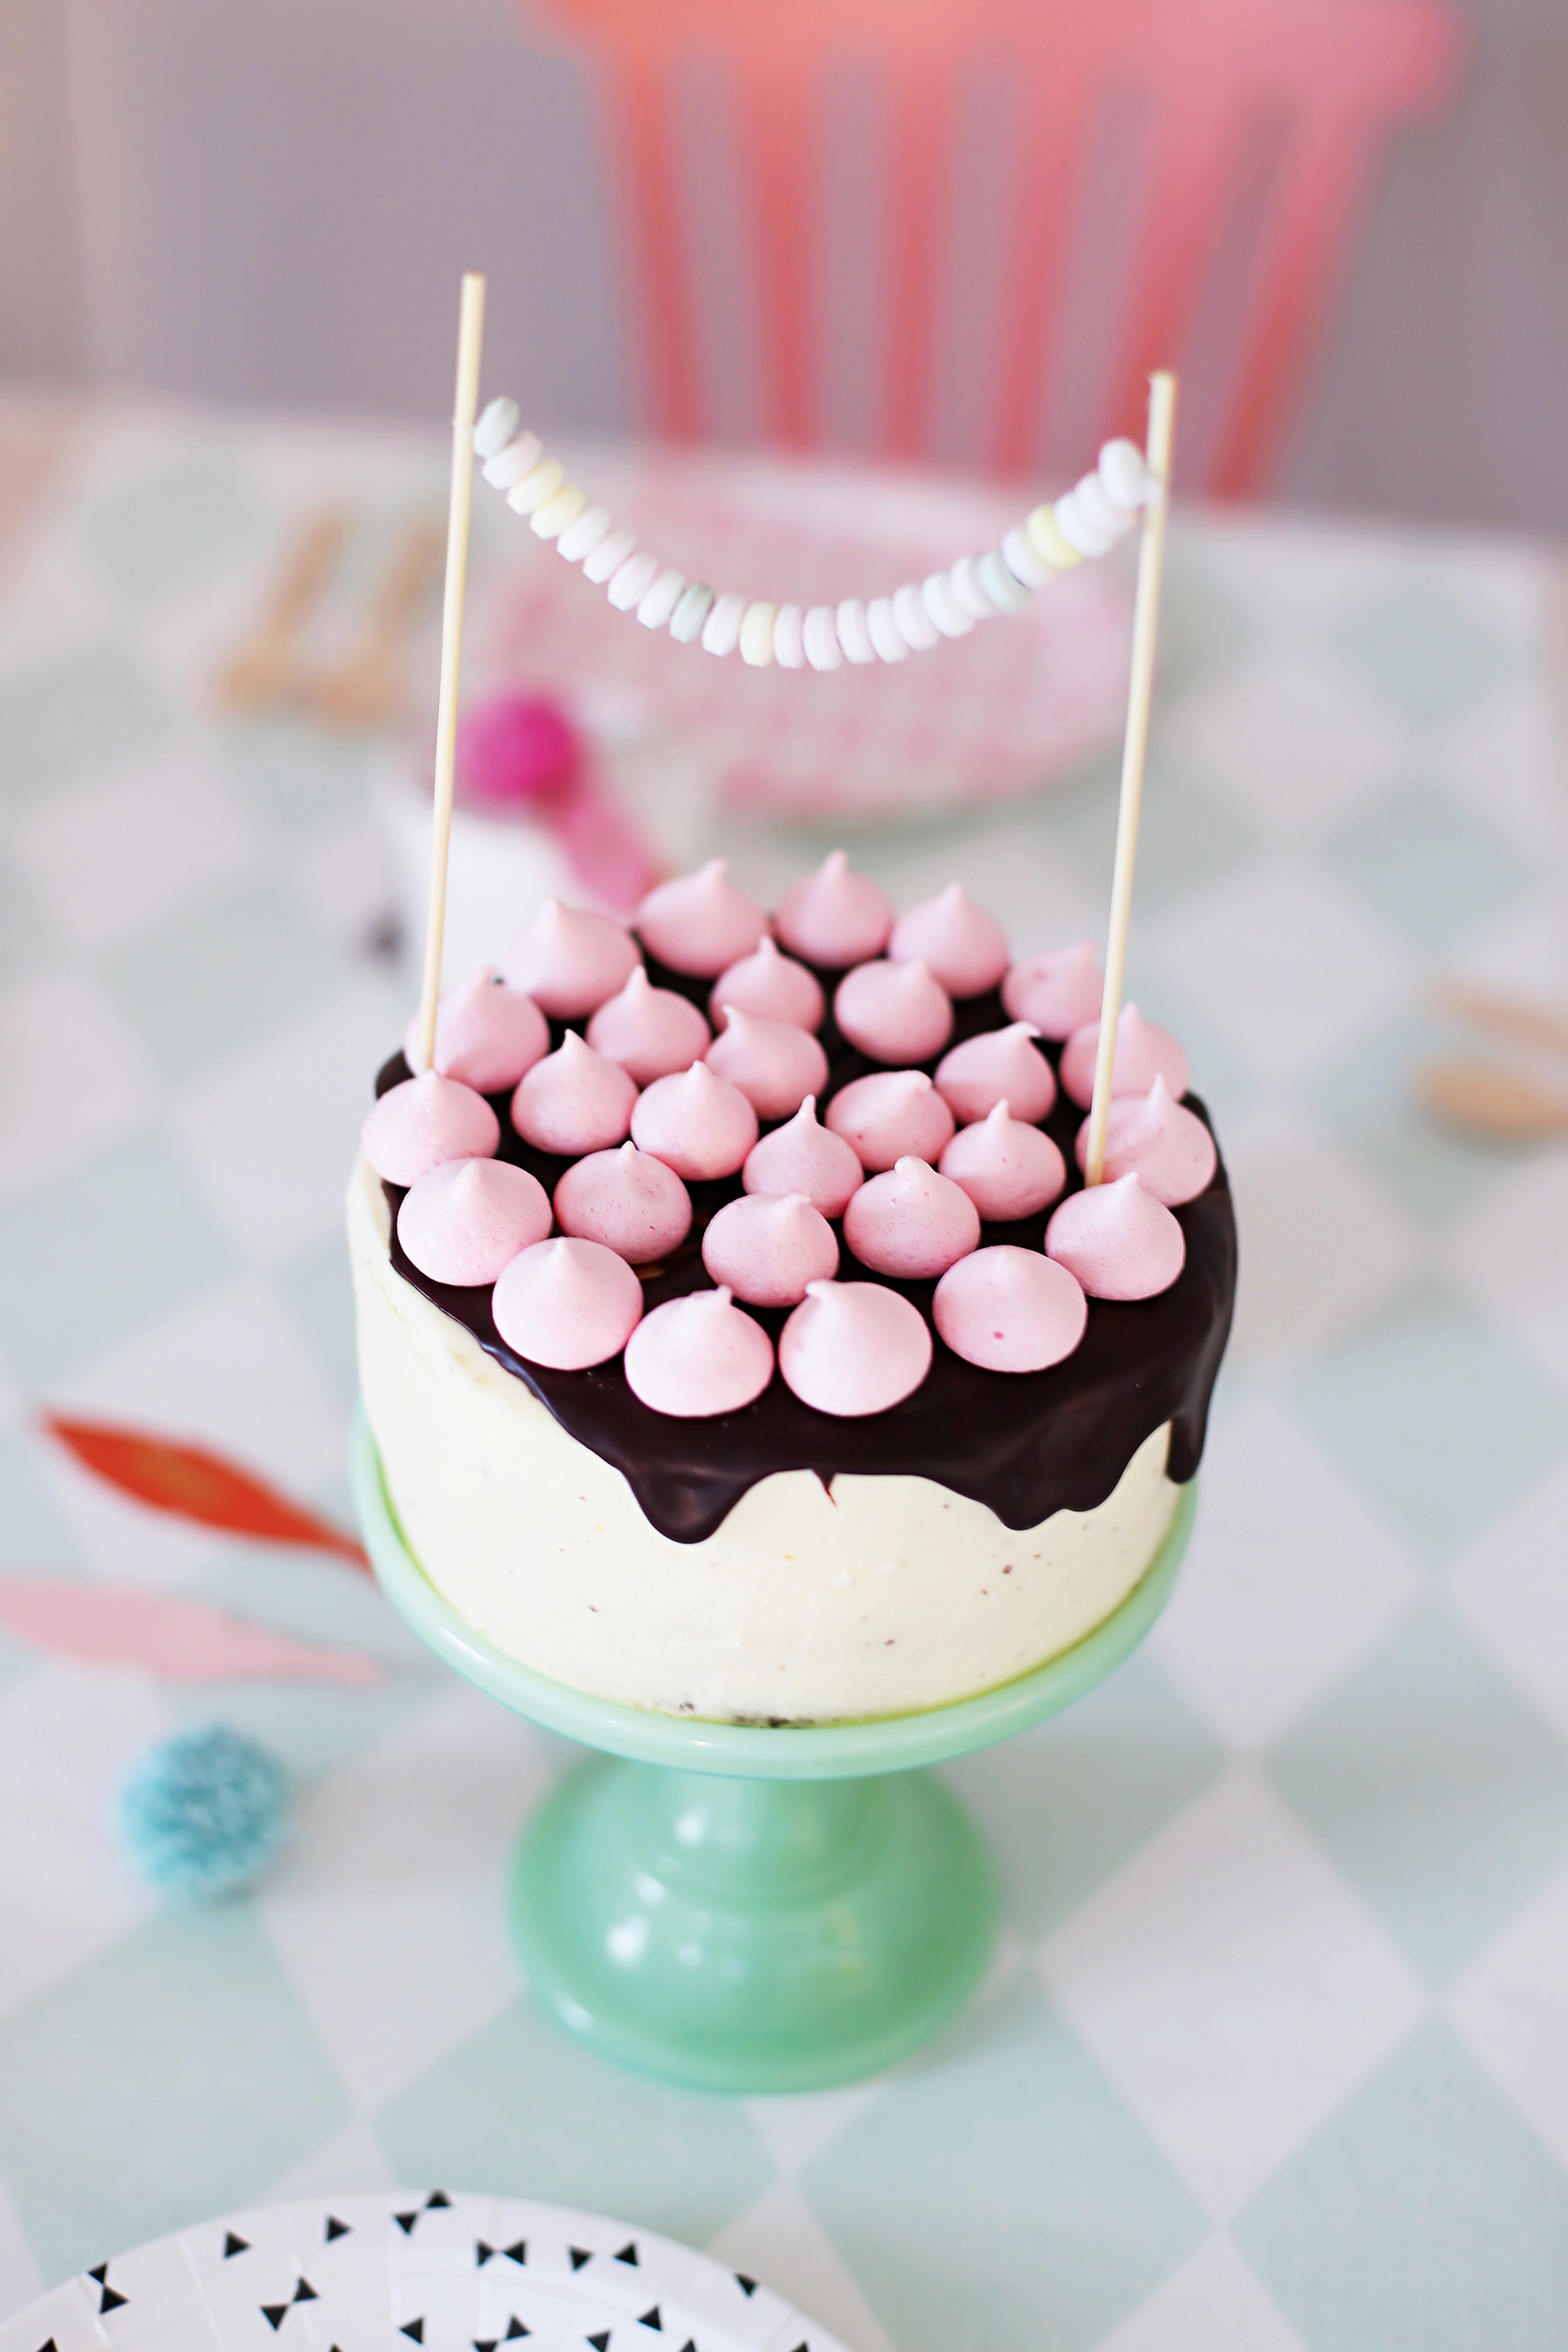 Biskuit-Torte mit Mascarpone-Schokoladencreme und rosafarbenen Baiser-Tupfen.